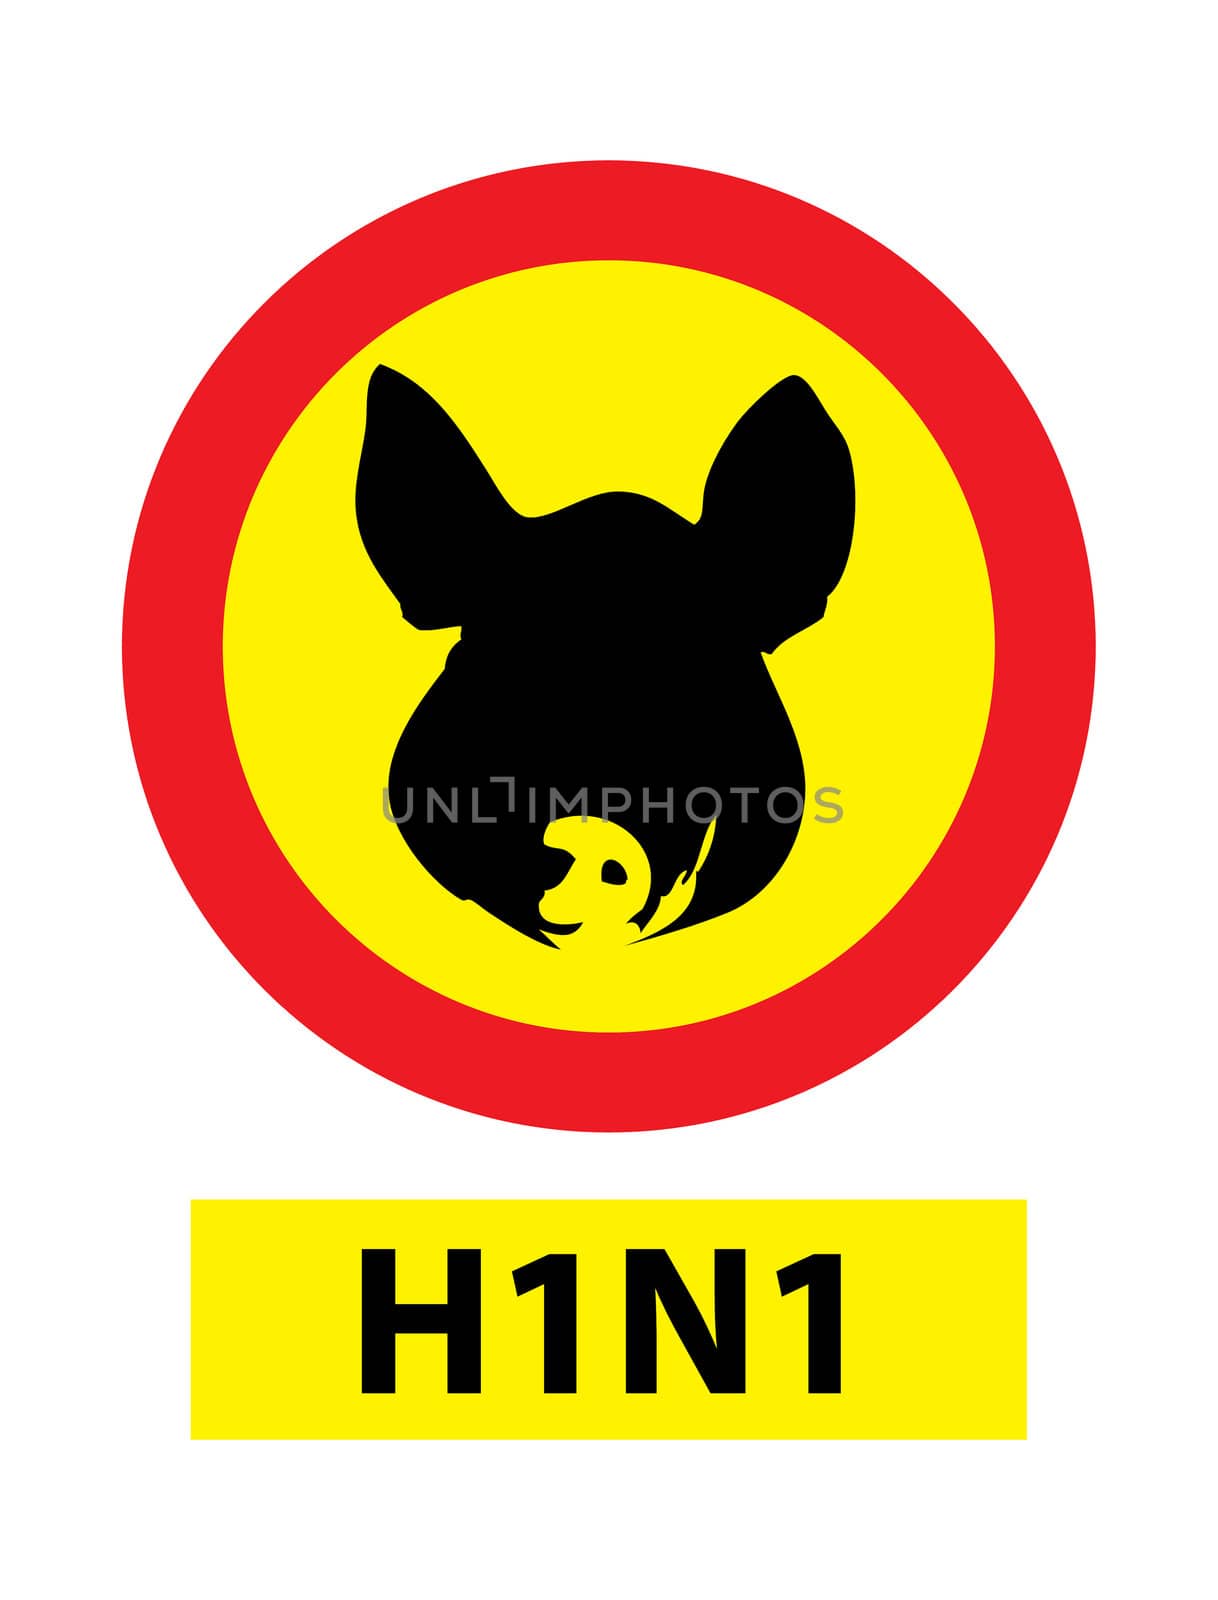 swine flu warning by Jova